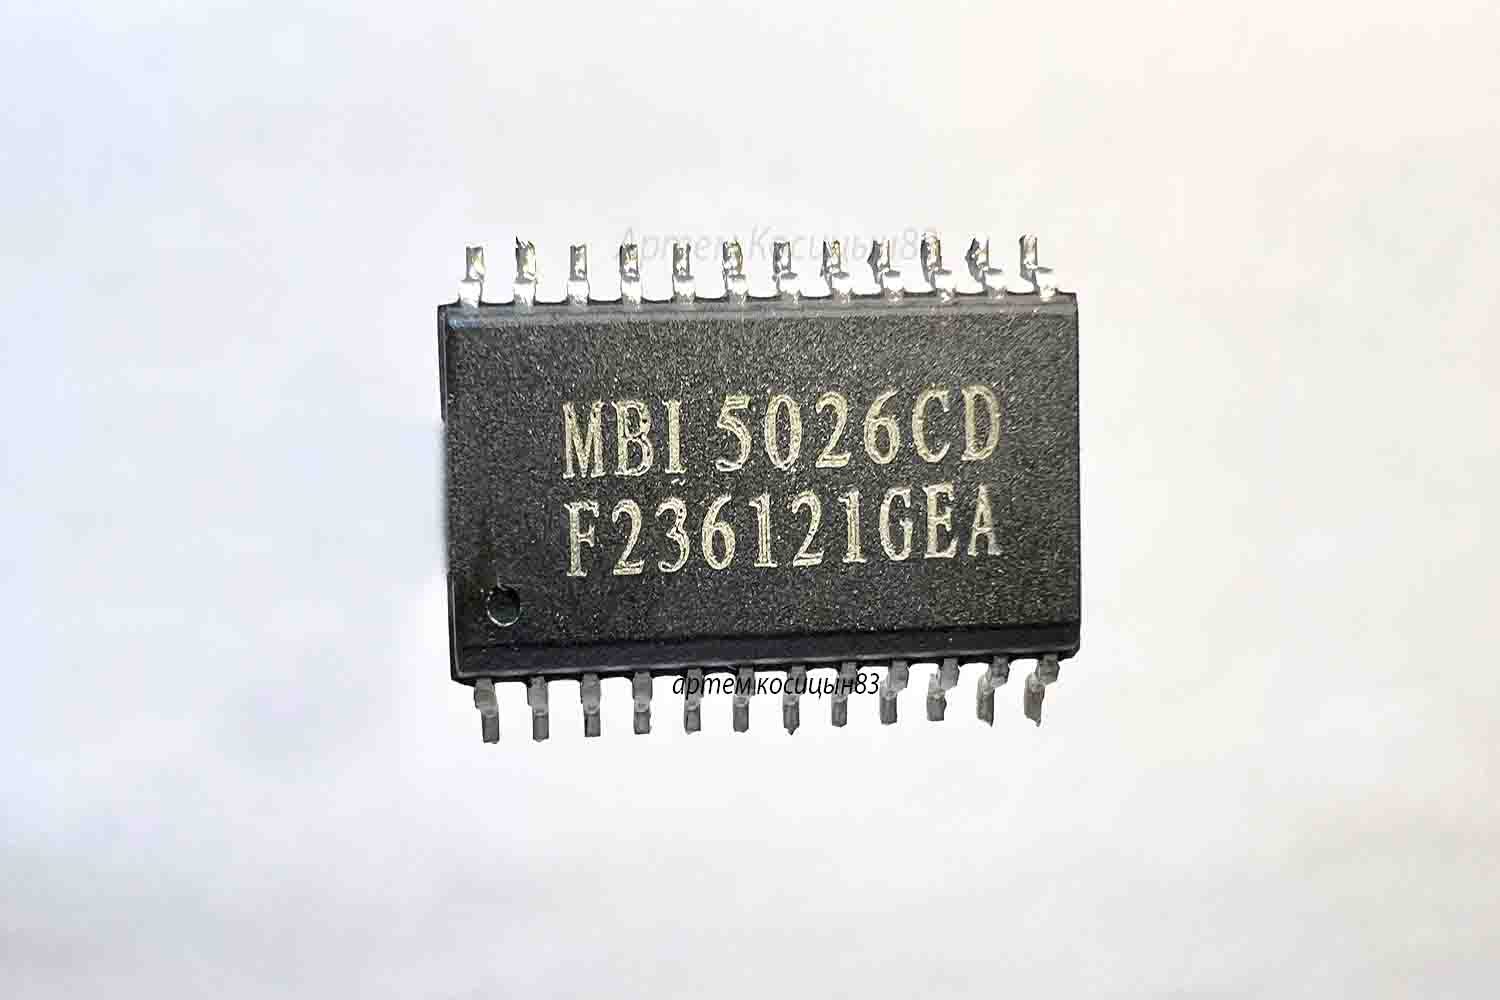 Подробнее о статье MBI5026CD.Светодиодный драйвер на 16 каналов с шиной управления